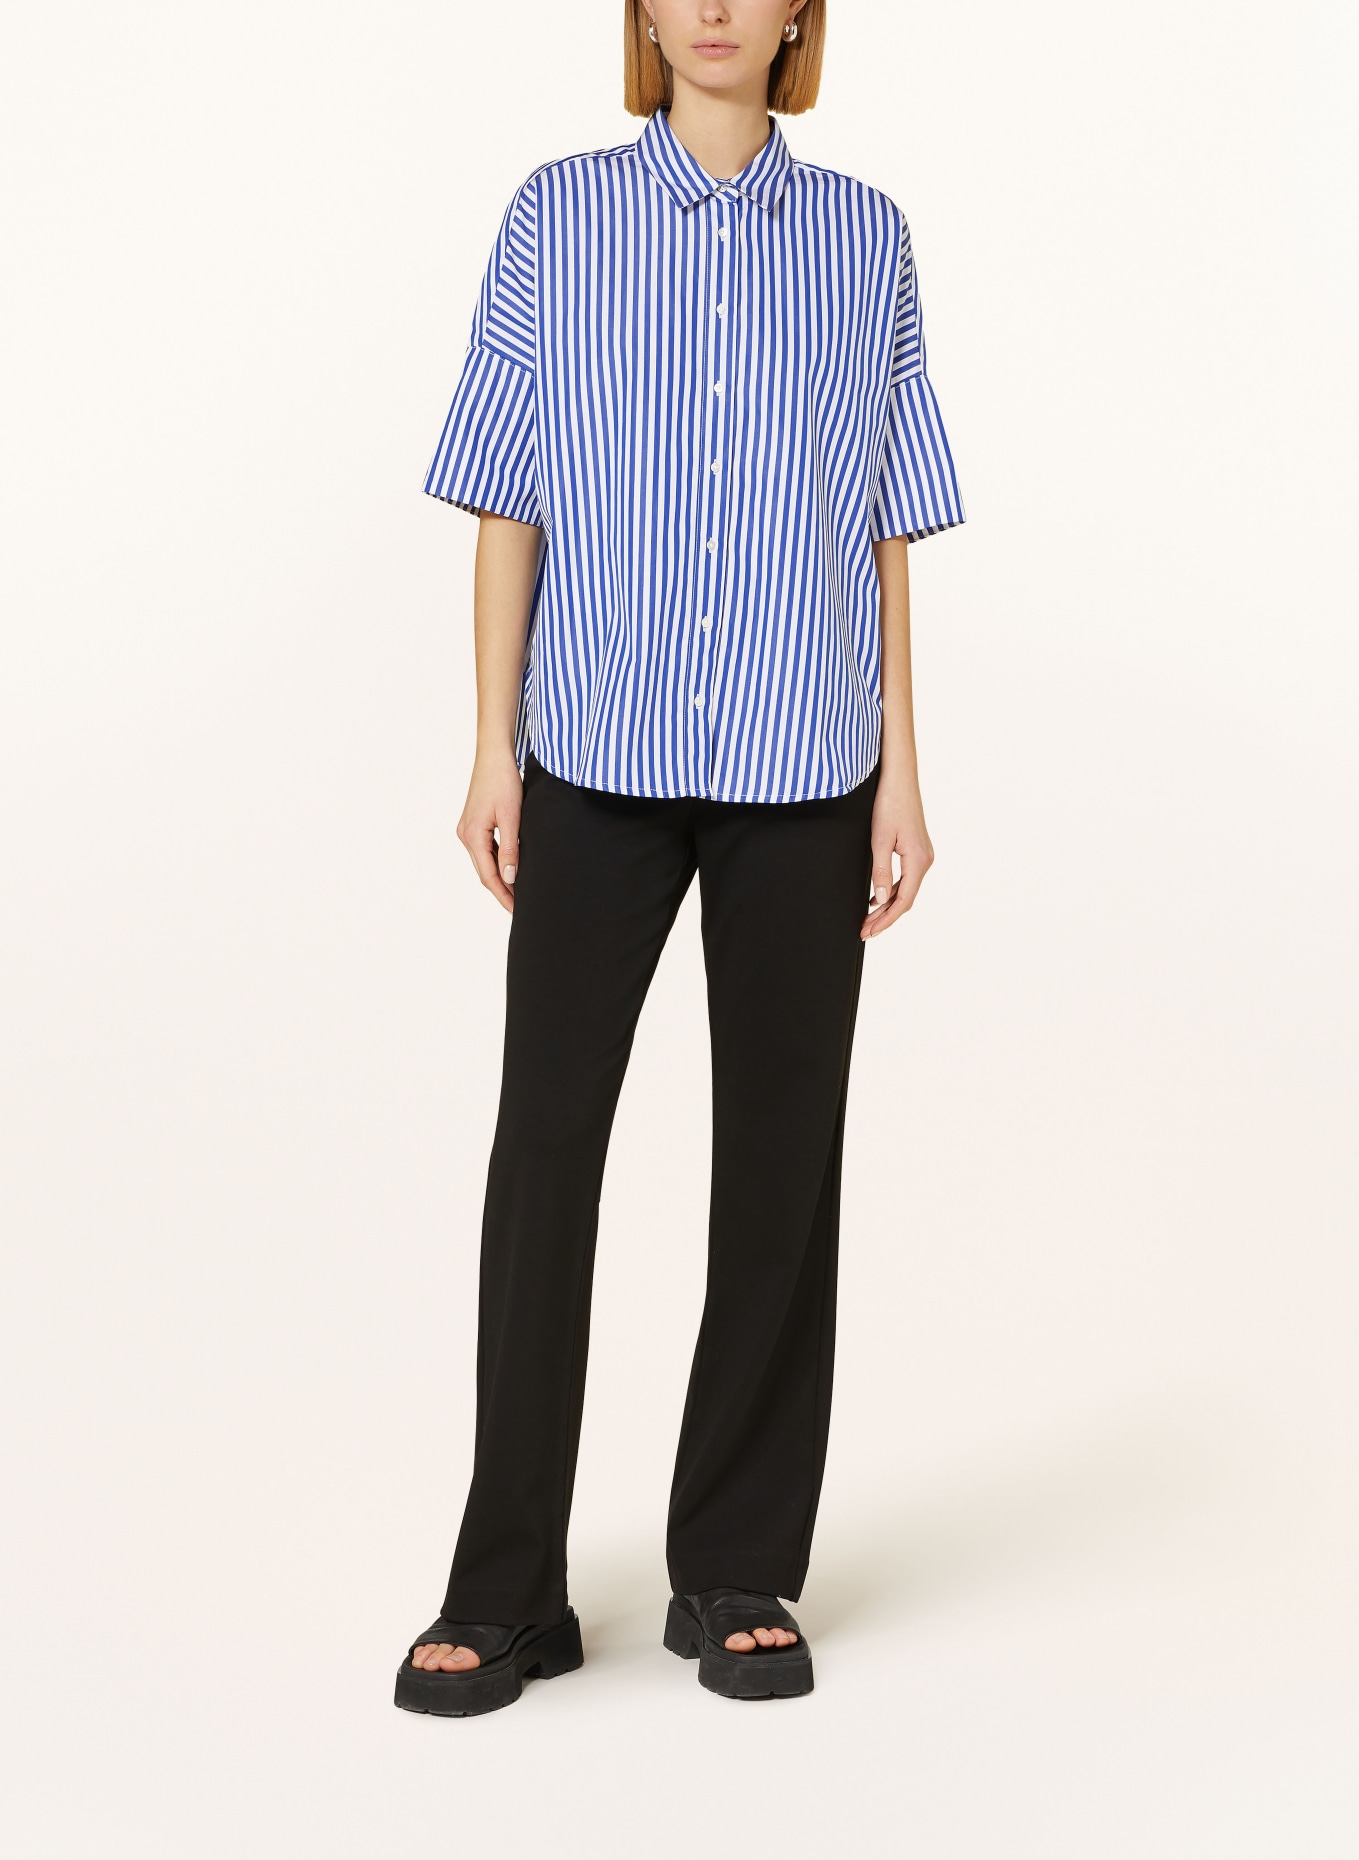 TONNO & PANNA Shirt blouse, Color: WHITE/ BLUE (Image 2)